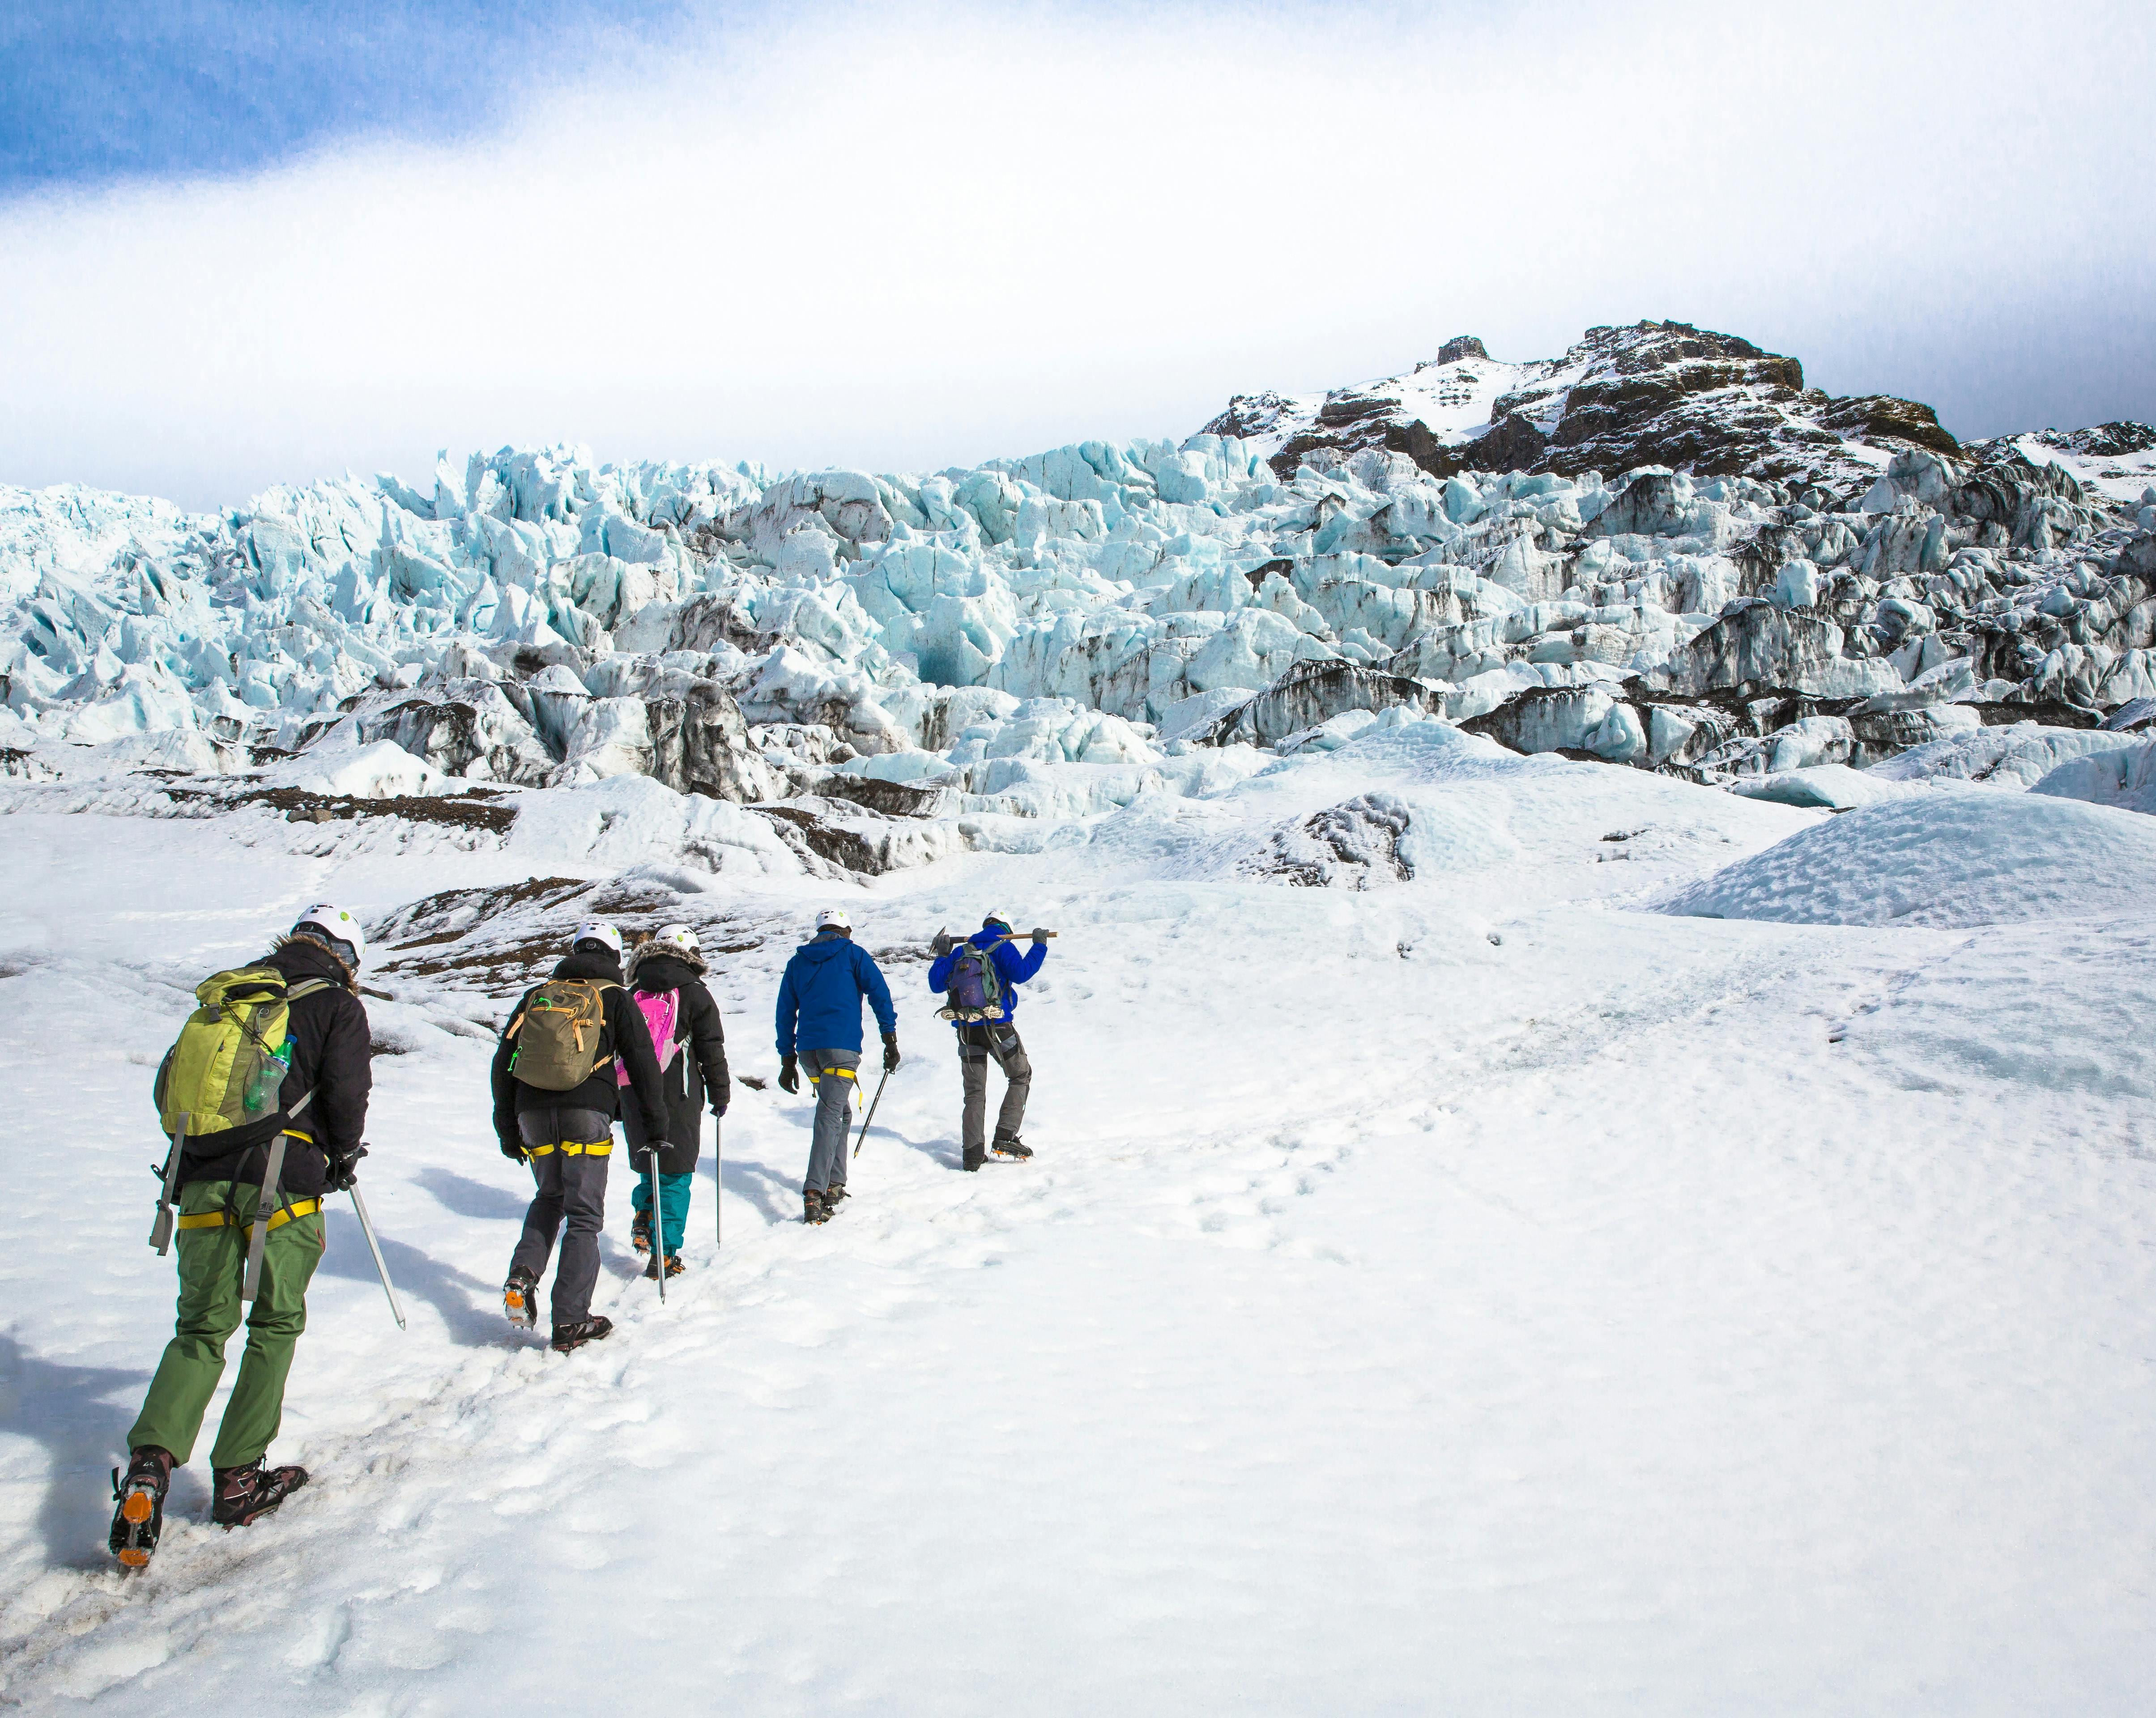 Escursione alle meraviglie del ghiacciaio